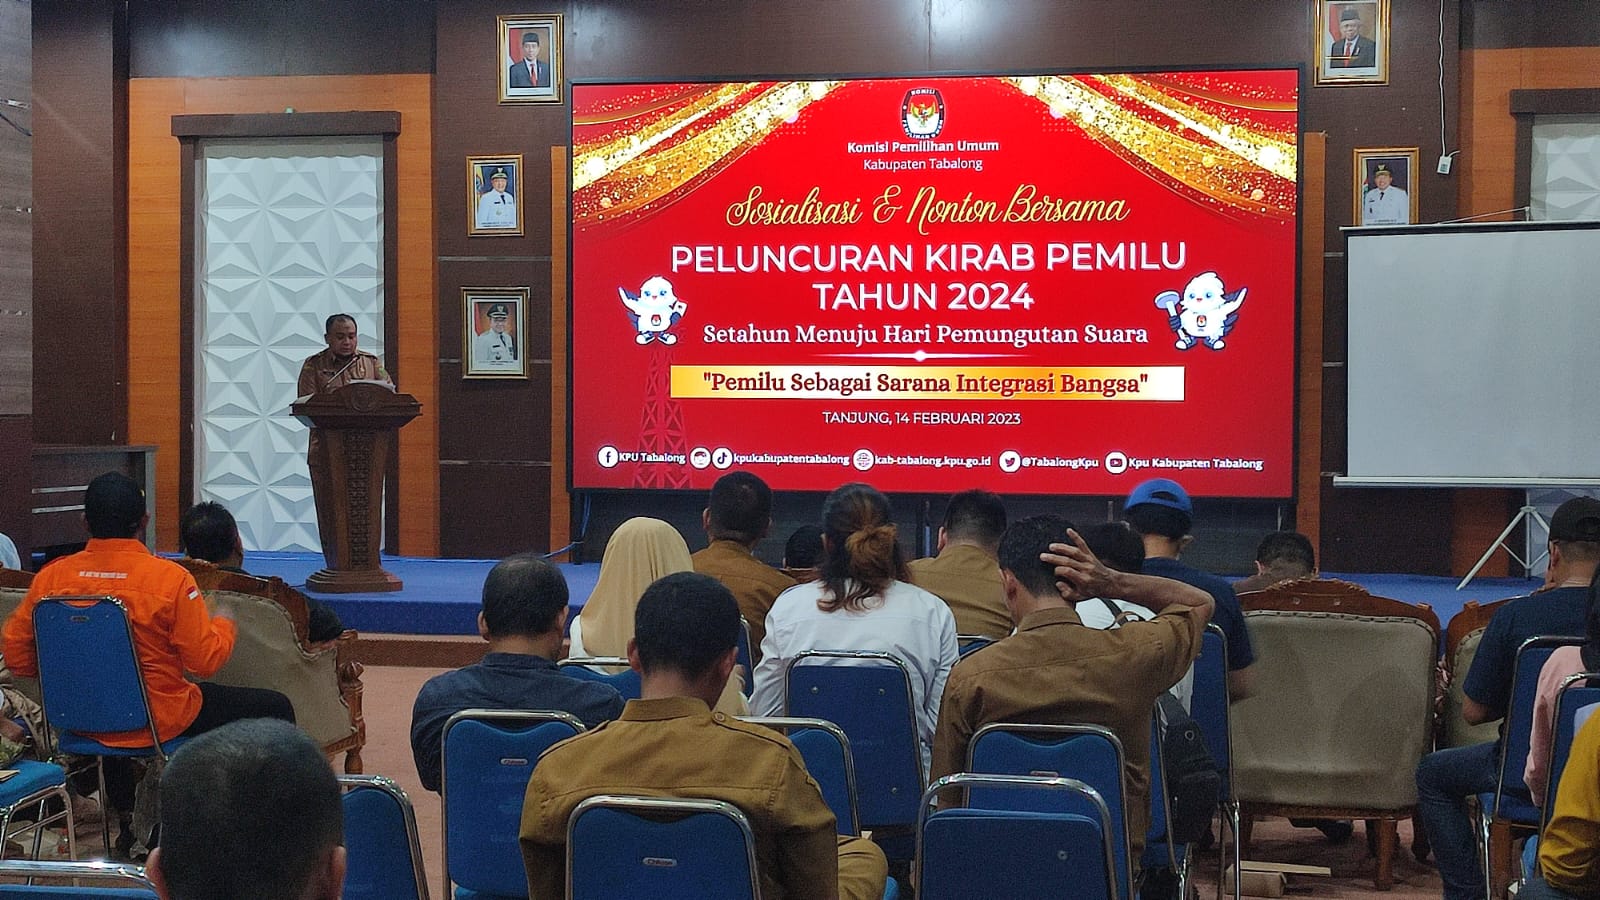 Pemkab Tabalong Berharap Peluncuran Karnaval Pemilu 2024 Bisa Memberikan Pemahaman Politik Yang Indah – koranbanjar.NET